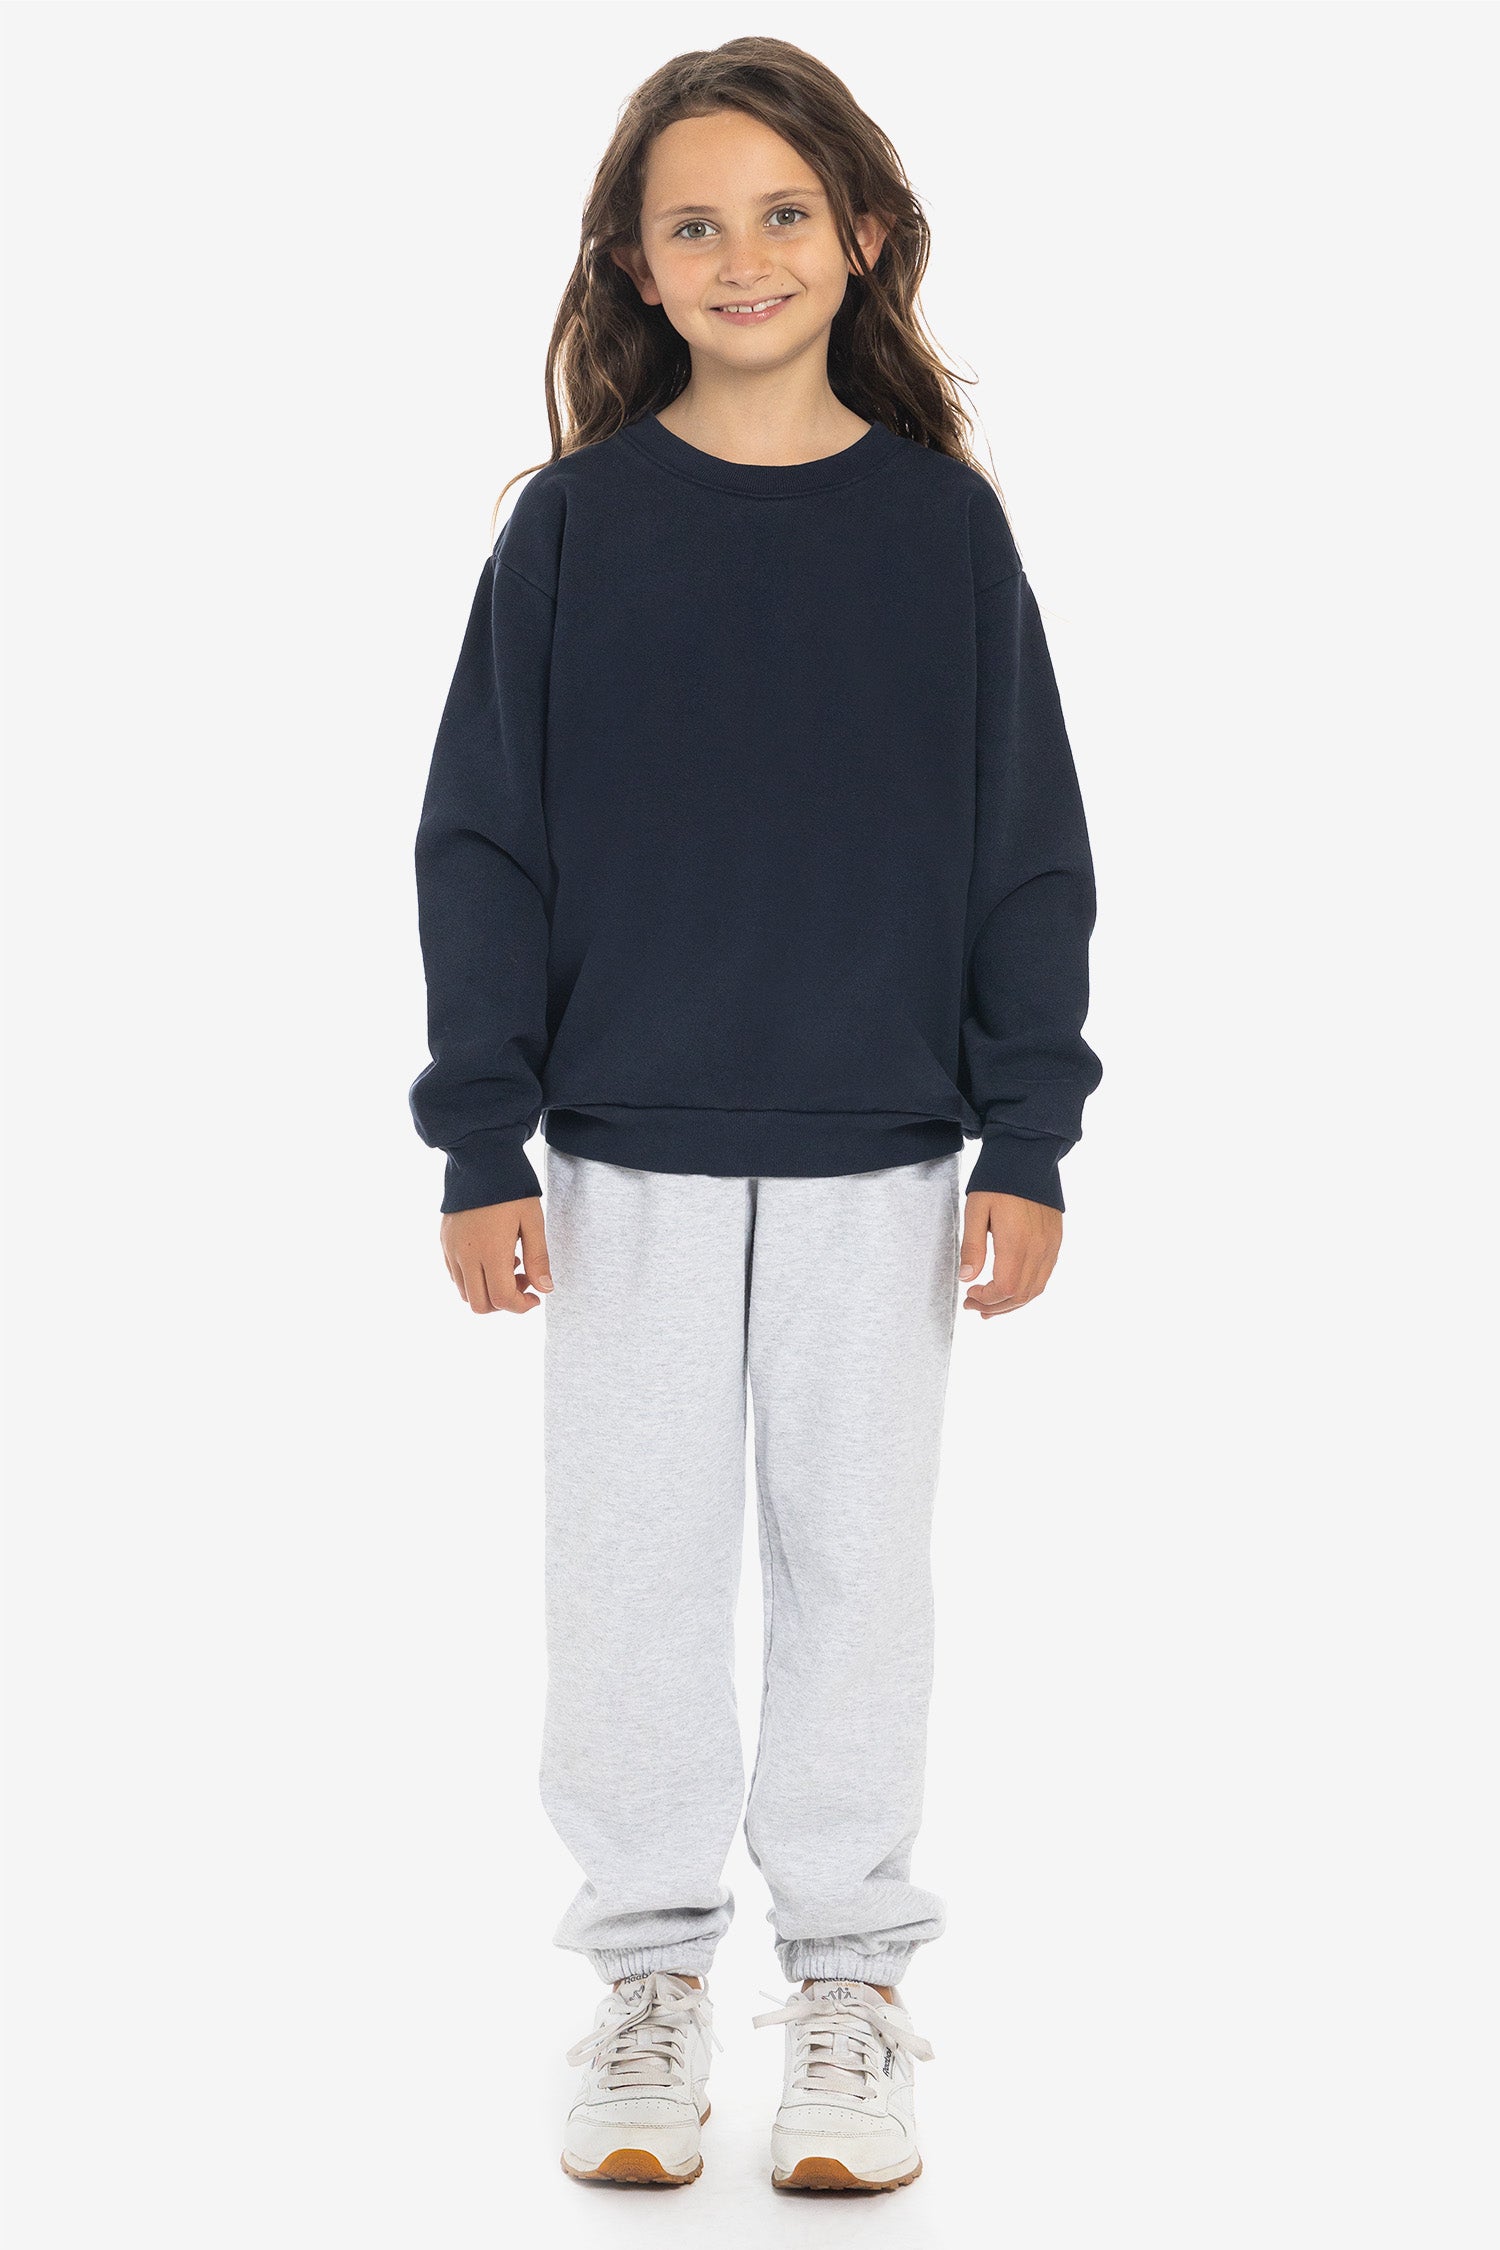 Crew Sweatshirt Apparel – Los HF107GD Dye Garment Angeles Heavy Fleece - Kids